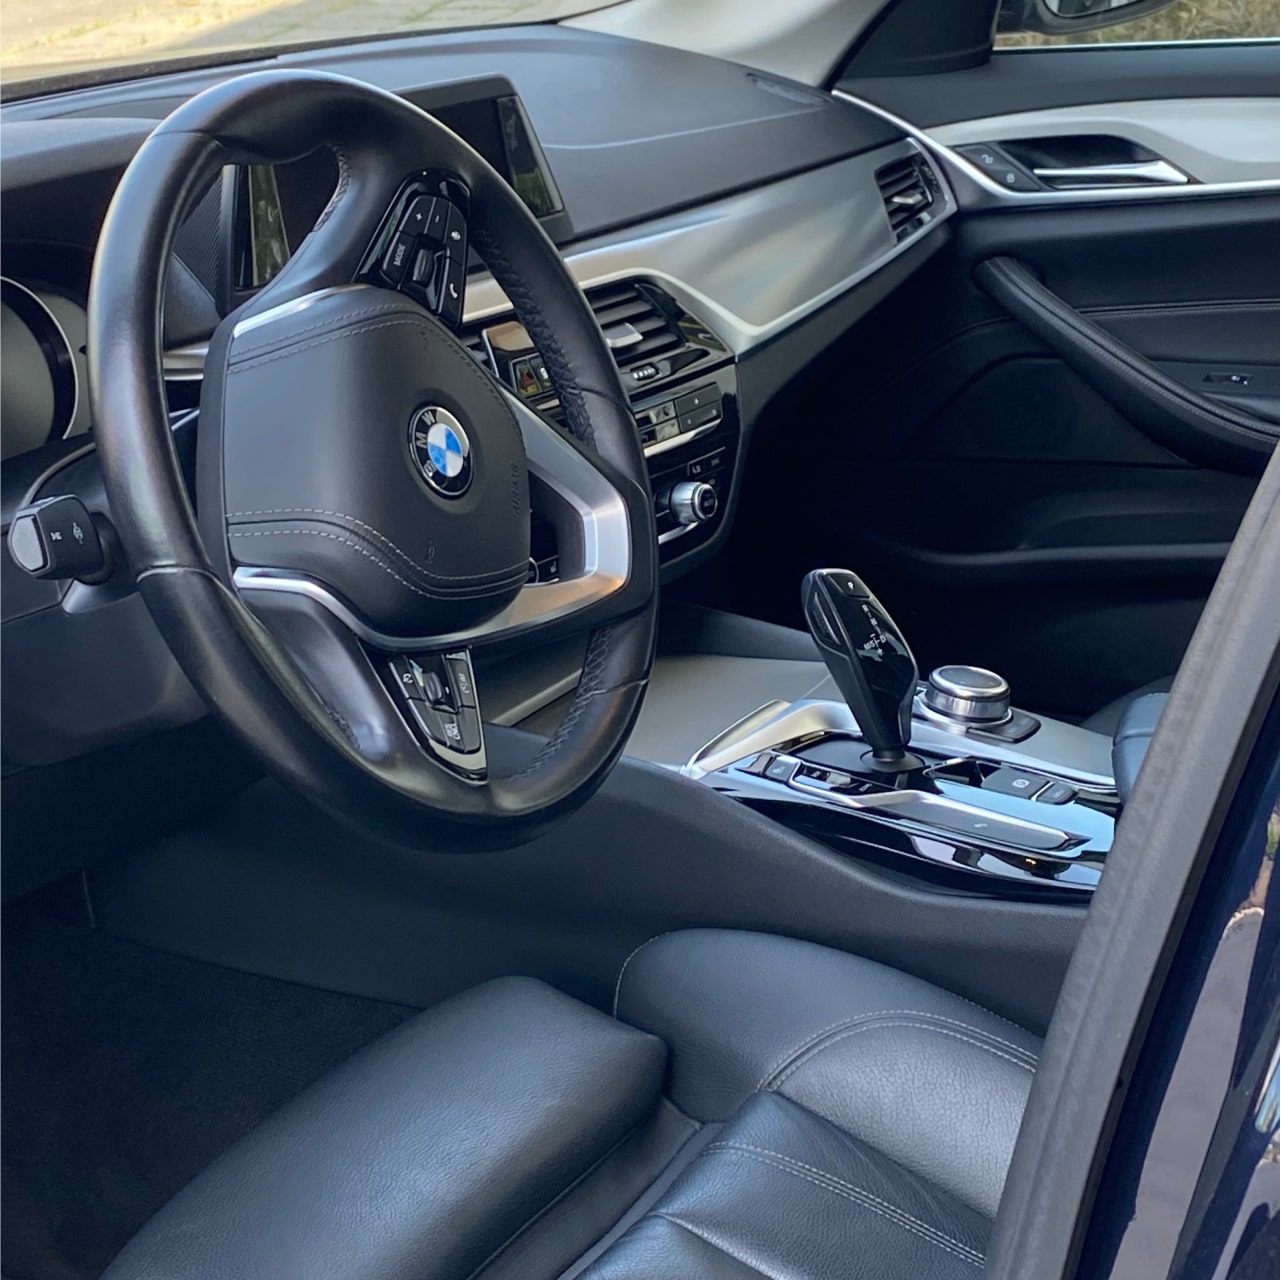 Аренда  BMW 520d G30 Luxury Line  3 класса 2019 года в городе Минск от 99 $/сутки,  двигатель: ДТ , объем 2.0 литров, КАСКО (Мультидрайв), без водителя, вид 5 - West Group